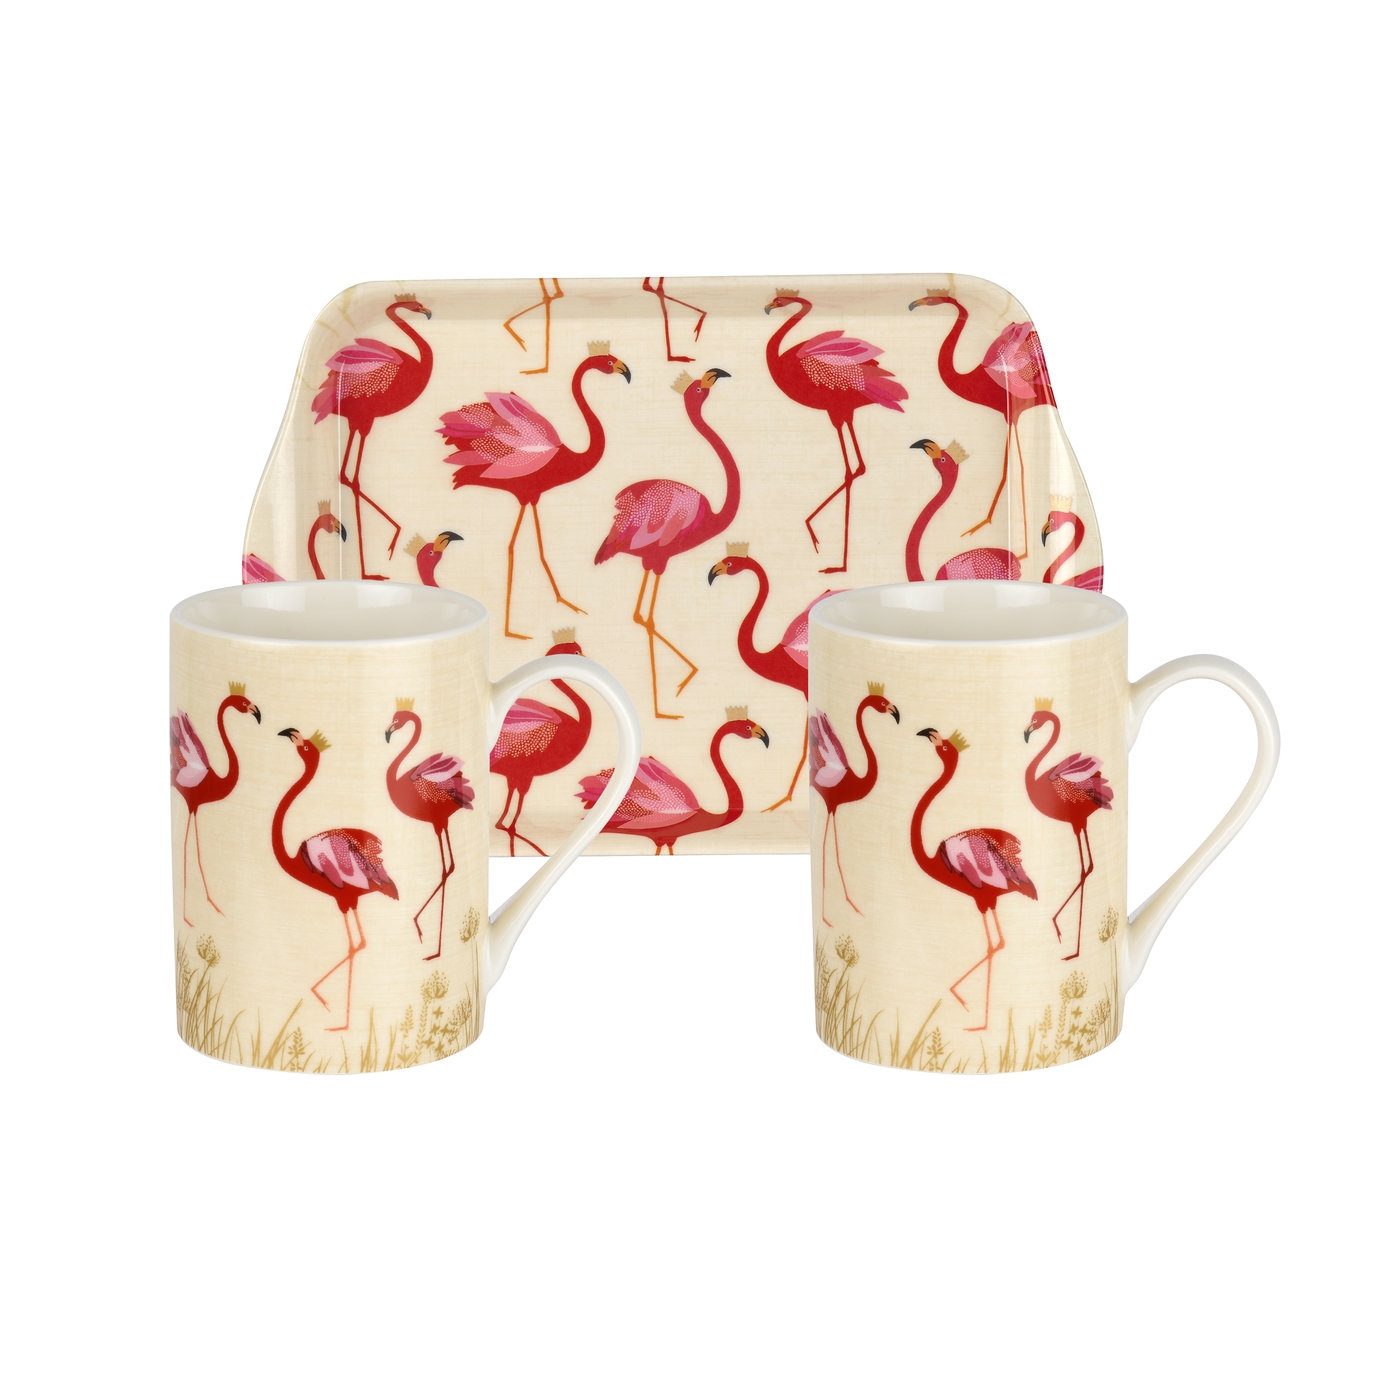 Sara Miller London Flamingo 3 Piece Mug & Tray Set image number null